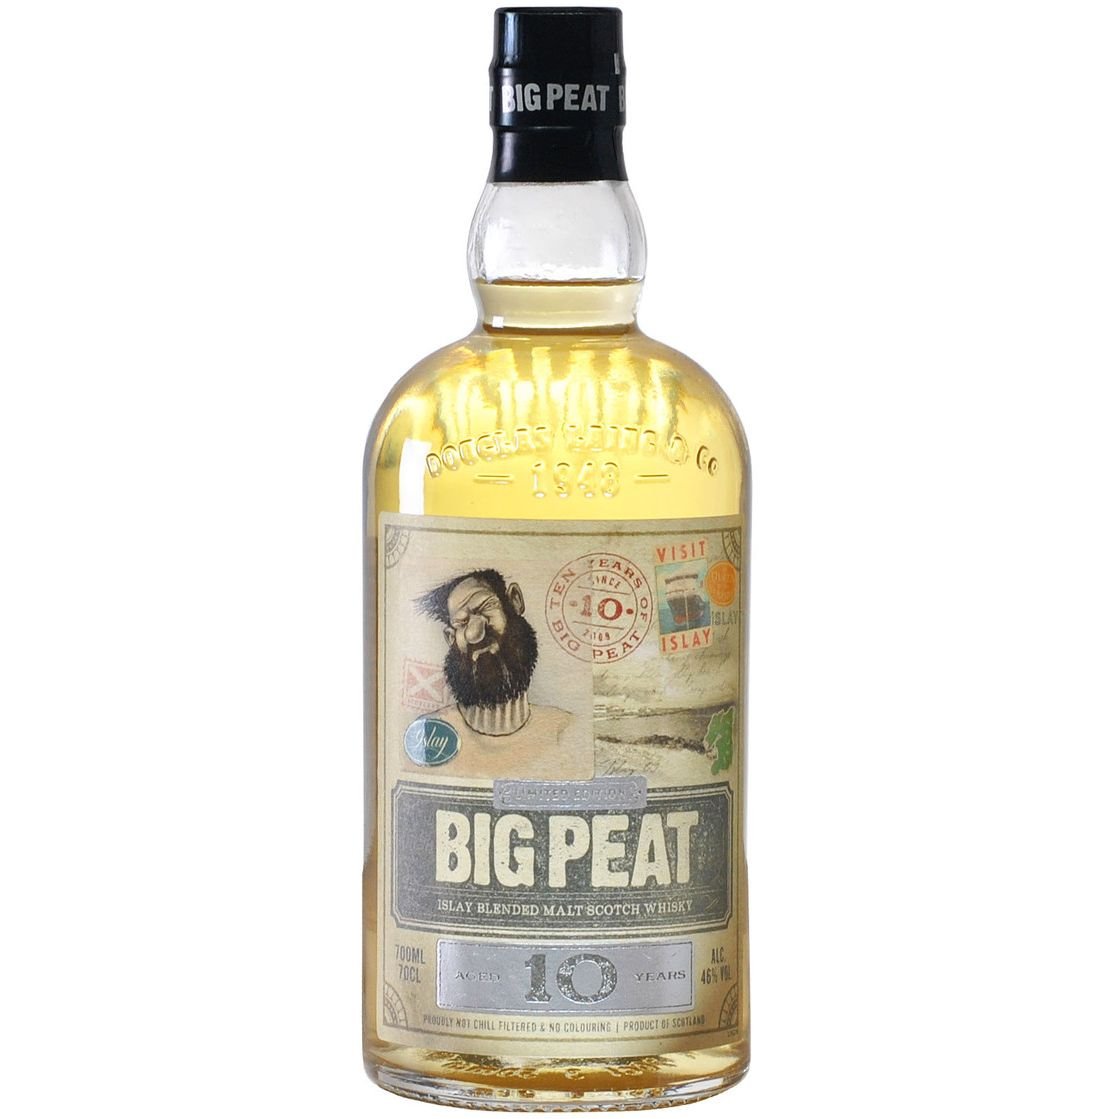 Виски Douglas Laing Big Peat 10 yo Blended Malt Scotch Whisky, Limited Edition, 46%, 0,7 л - фото 1